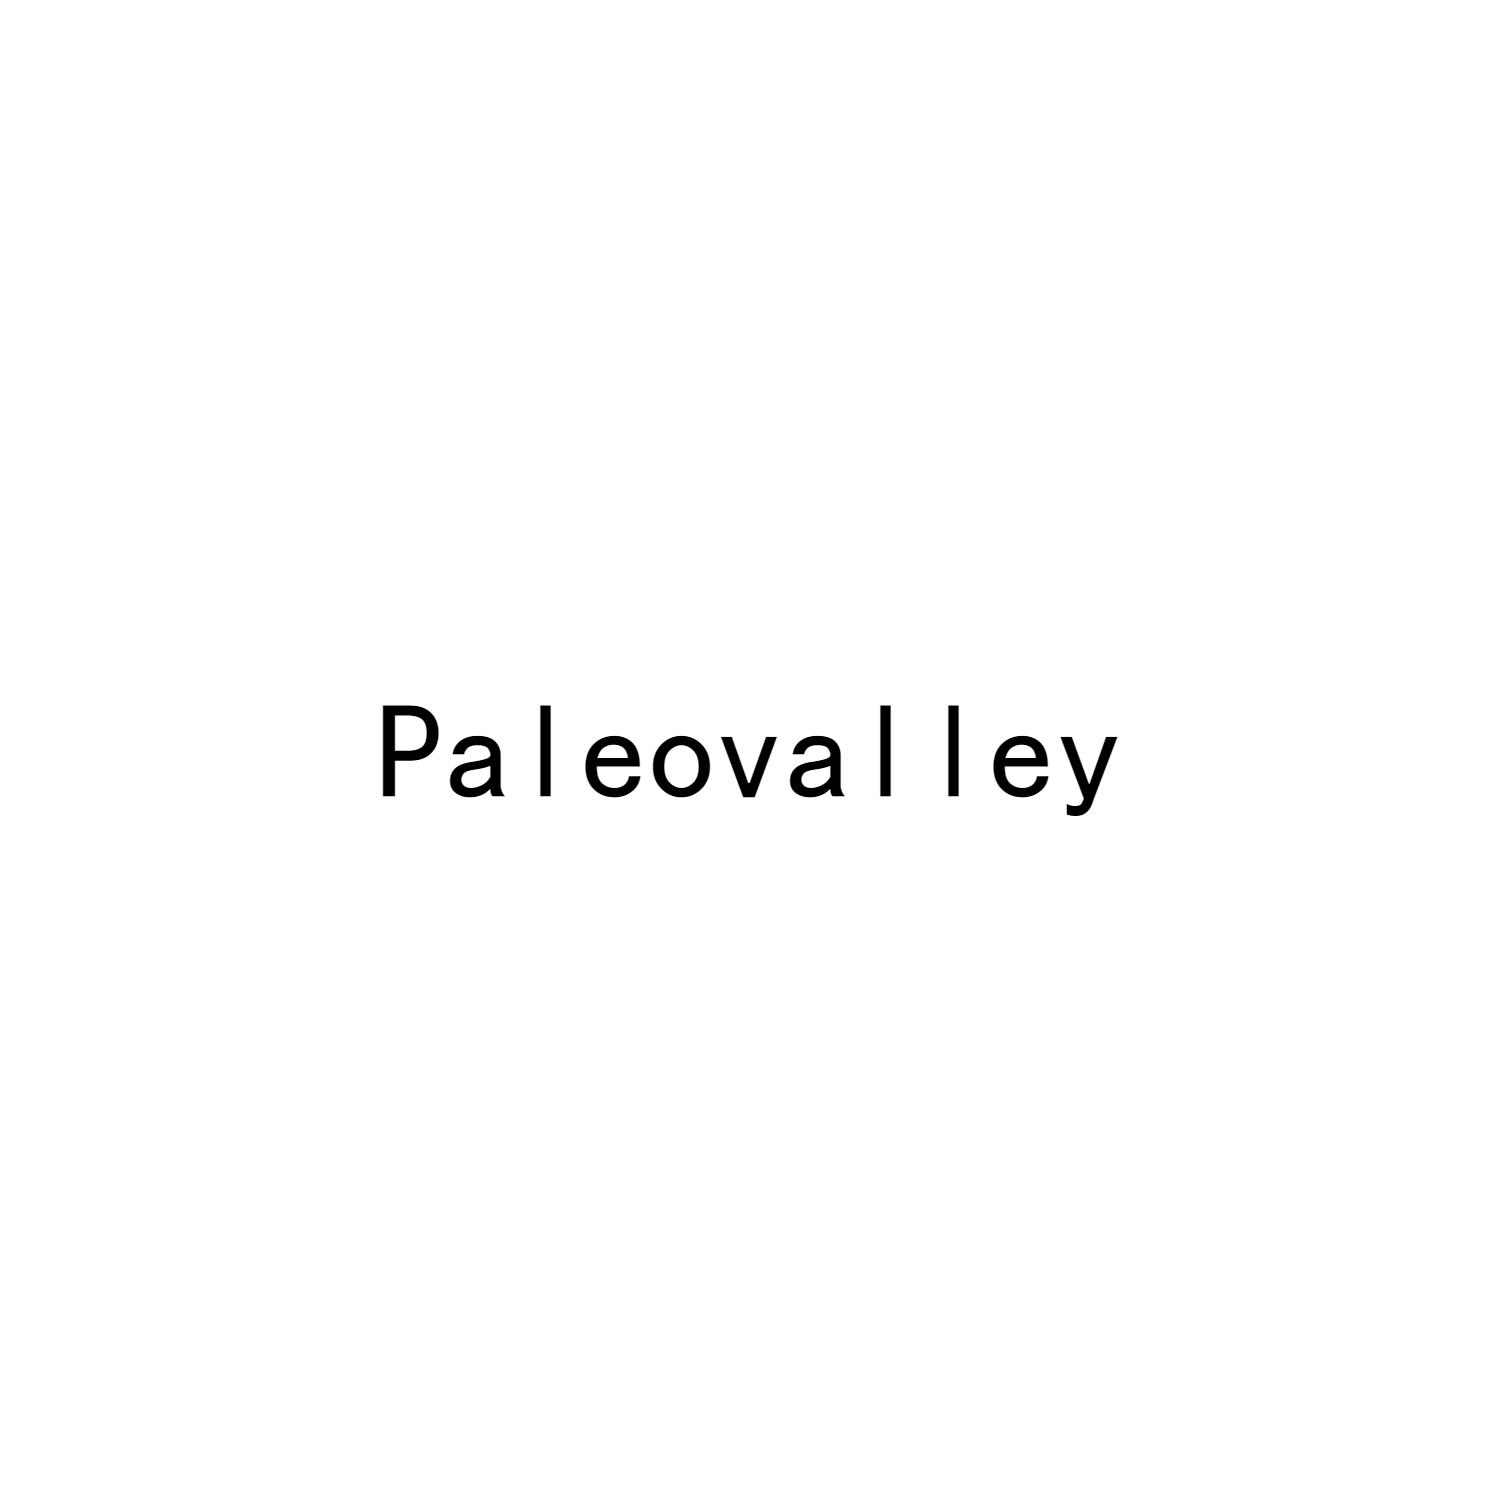 PALEOVALLEY